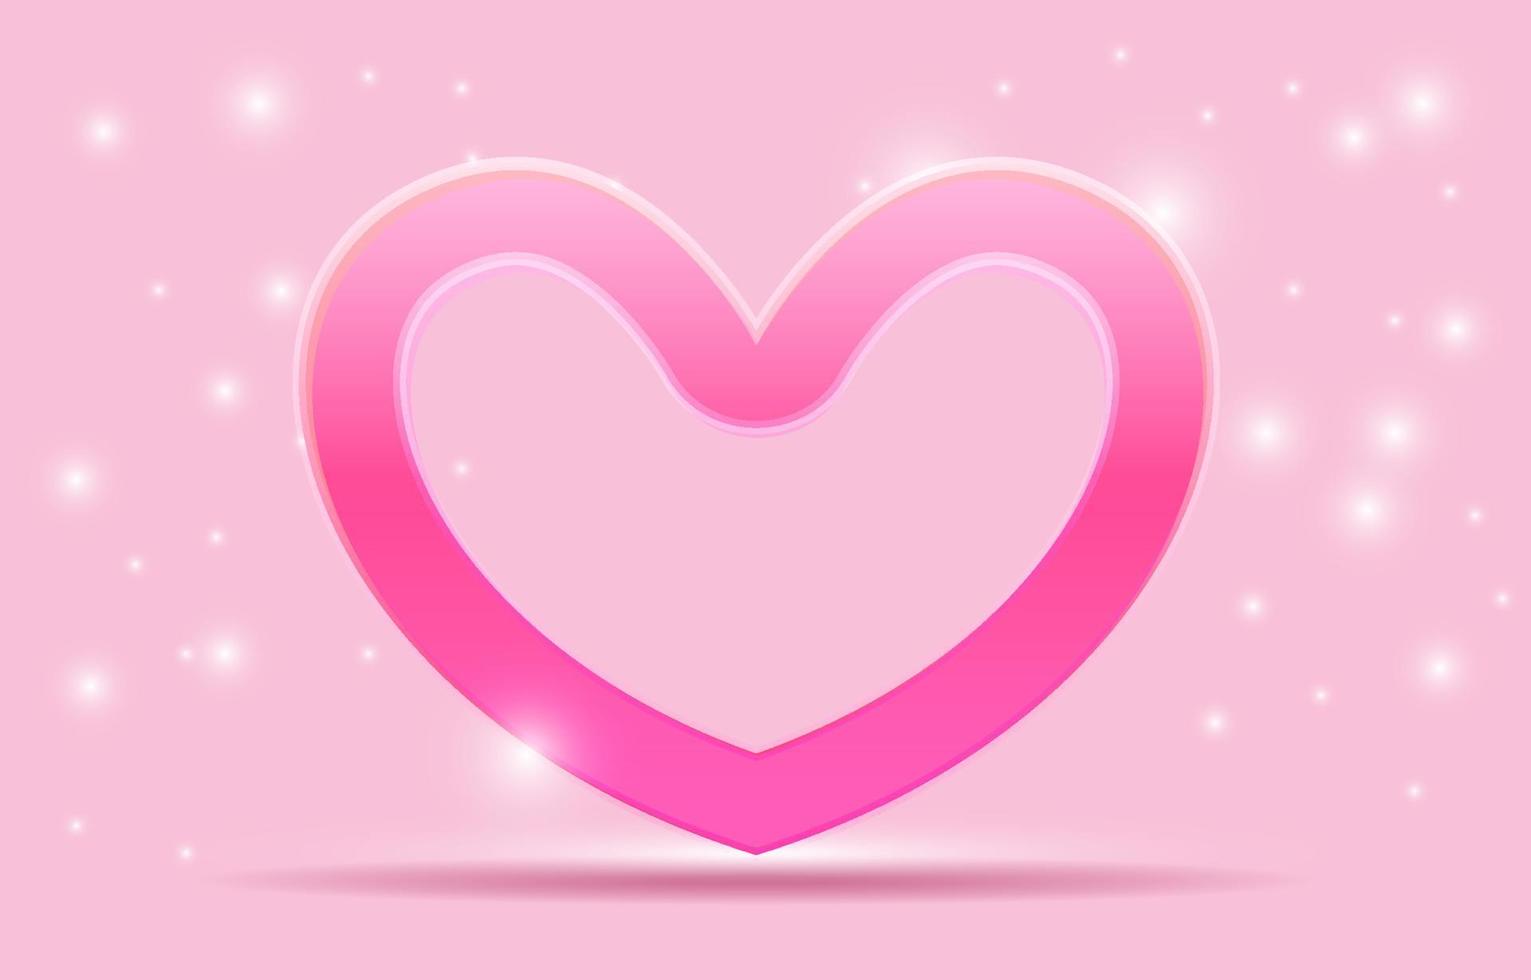 palco rosa para colocação de produtos. pódio de cilindro vazio. conceito de amor ou dia dos namorados. doce fundo rosa decorado com corações, caixas de presente e sacolas de compras. projetado para plano de fundo, banner vetor